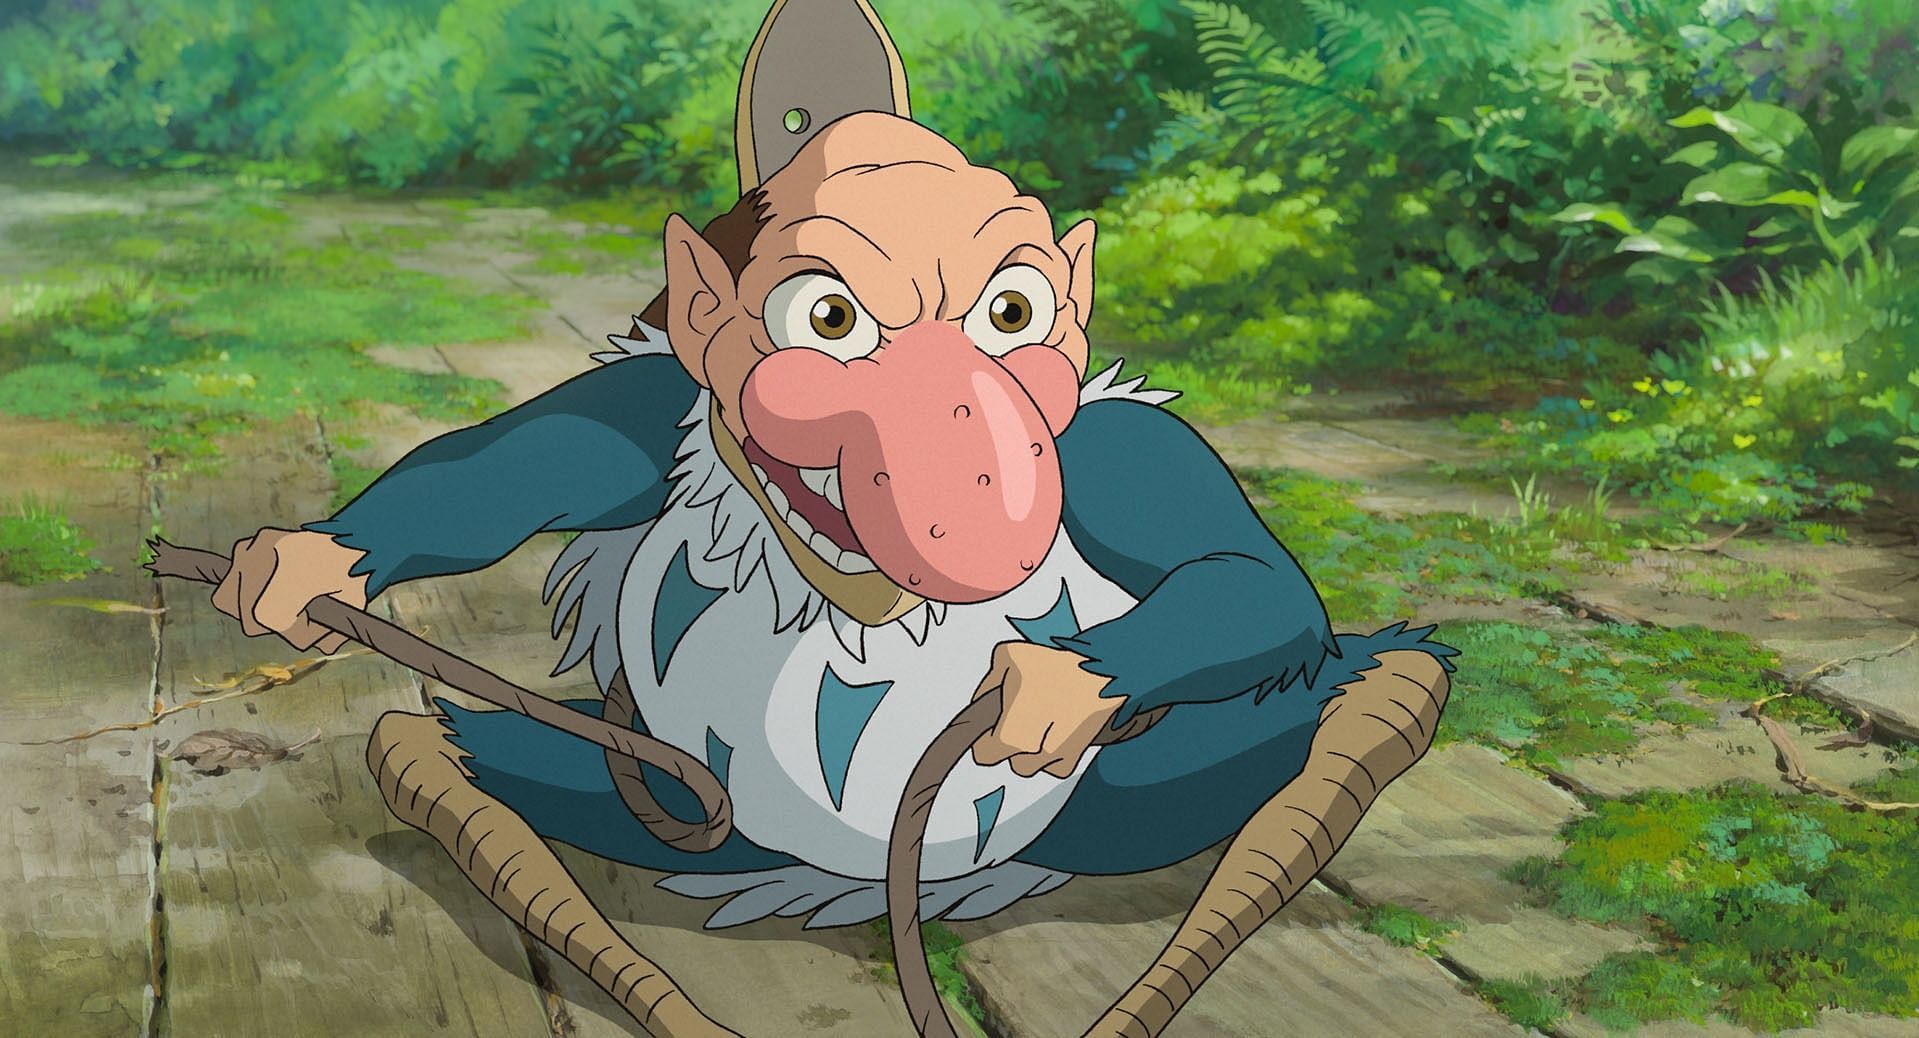 Heron Man, as seen in the anime movie (Image via Studio Ghibli)